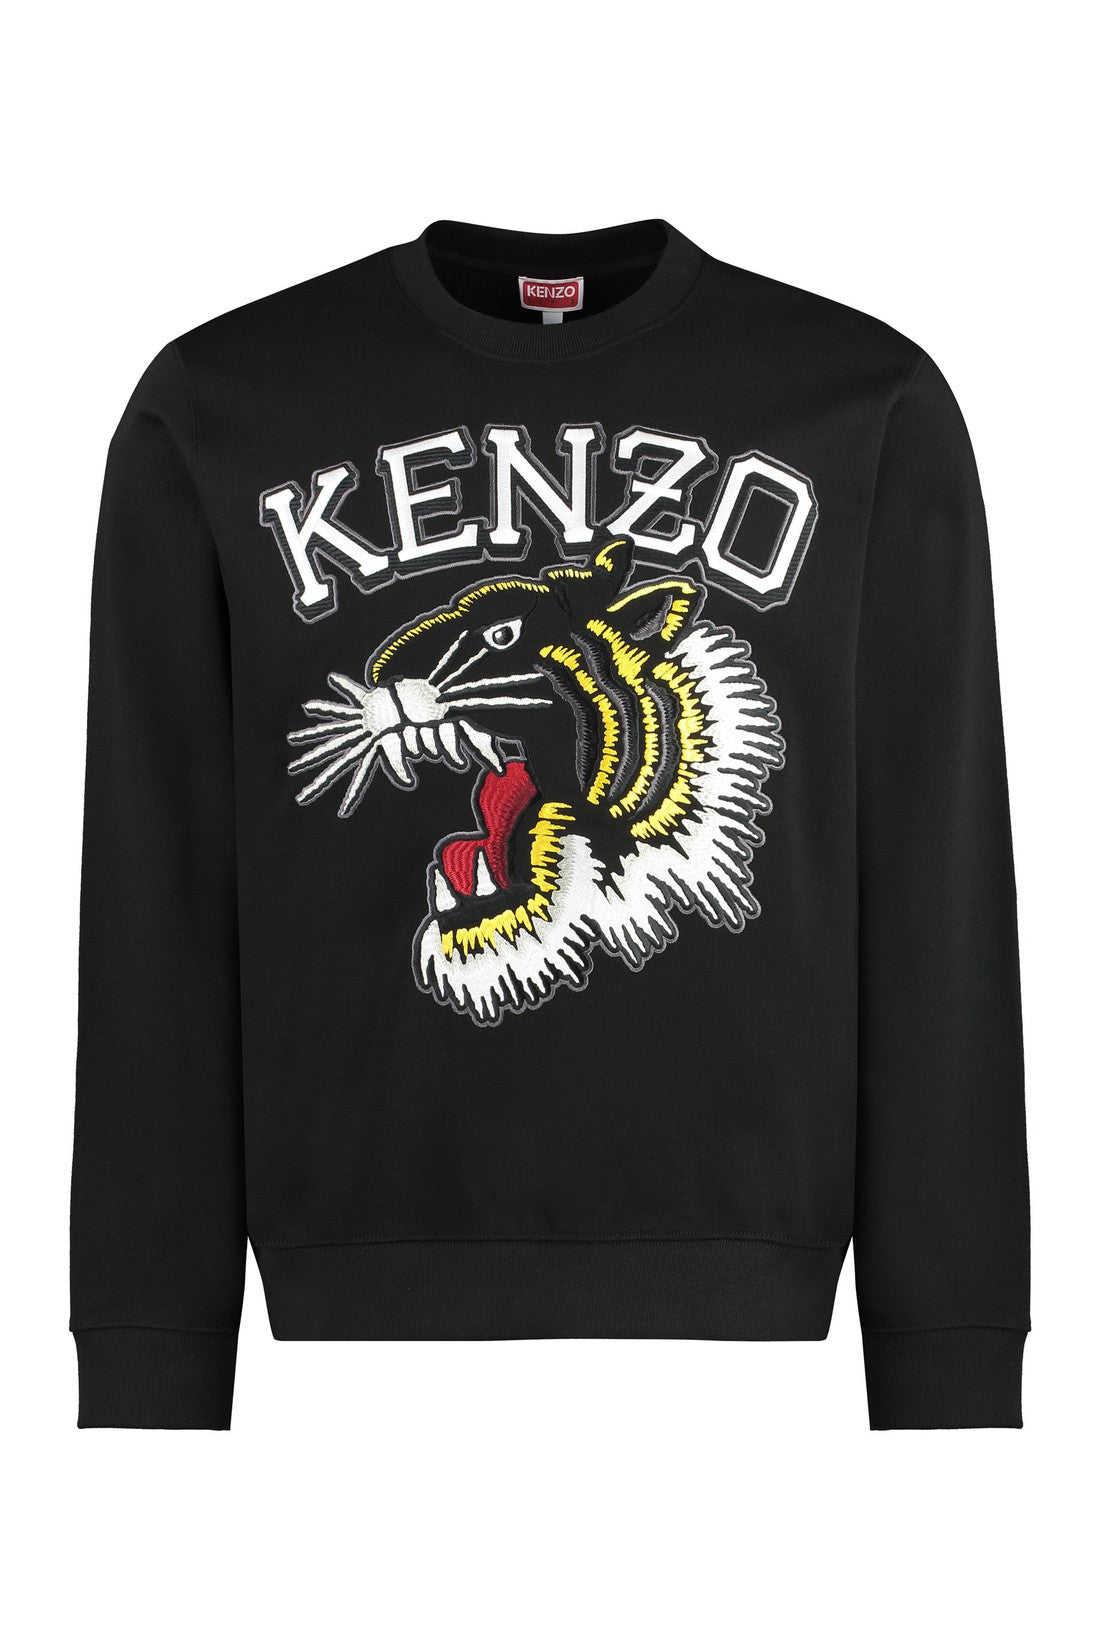 Kenzo-OUTLET-SALE-Cotton crew-neck sweatshirt-ARCHIVIST